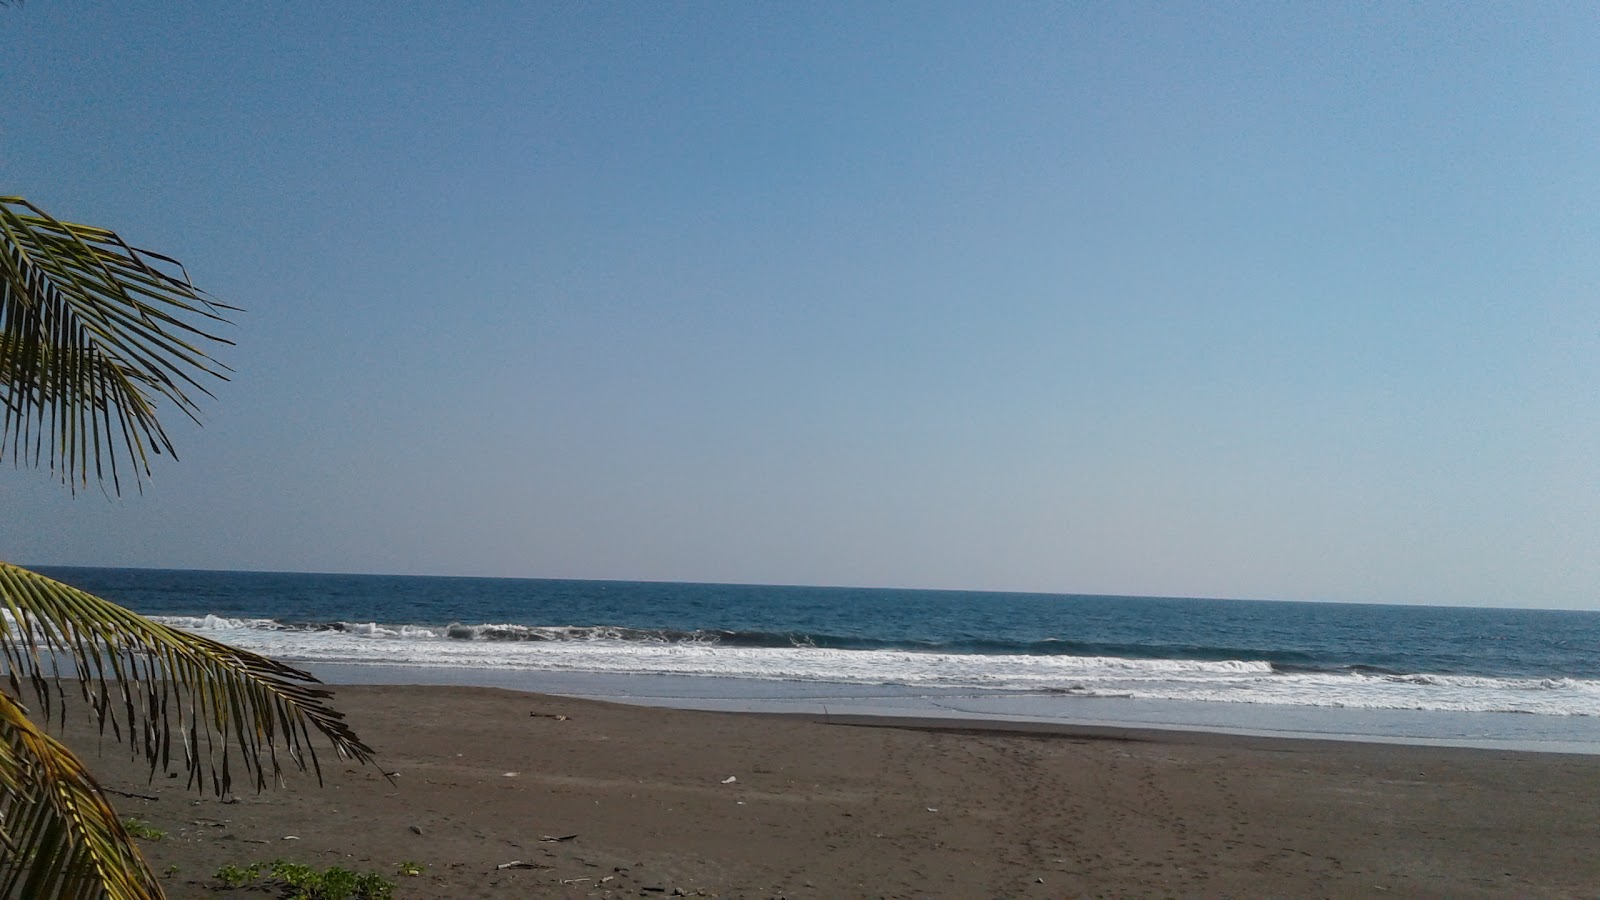 Siguapilapa beach'in fotoğrafı kahverengi kum yüzey ile